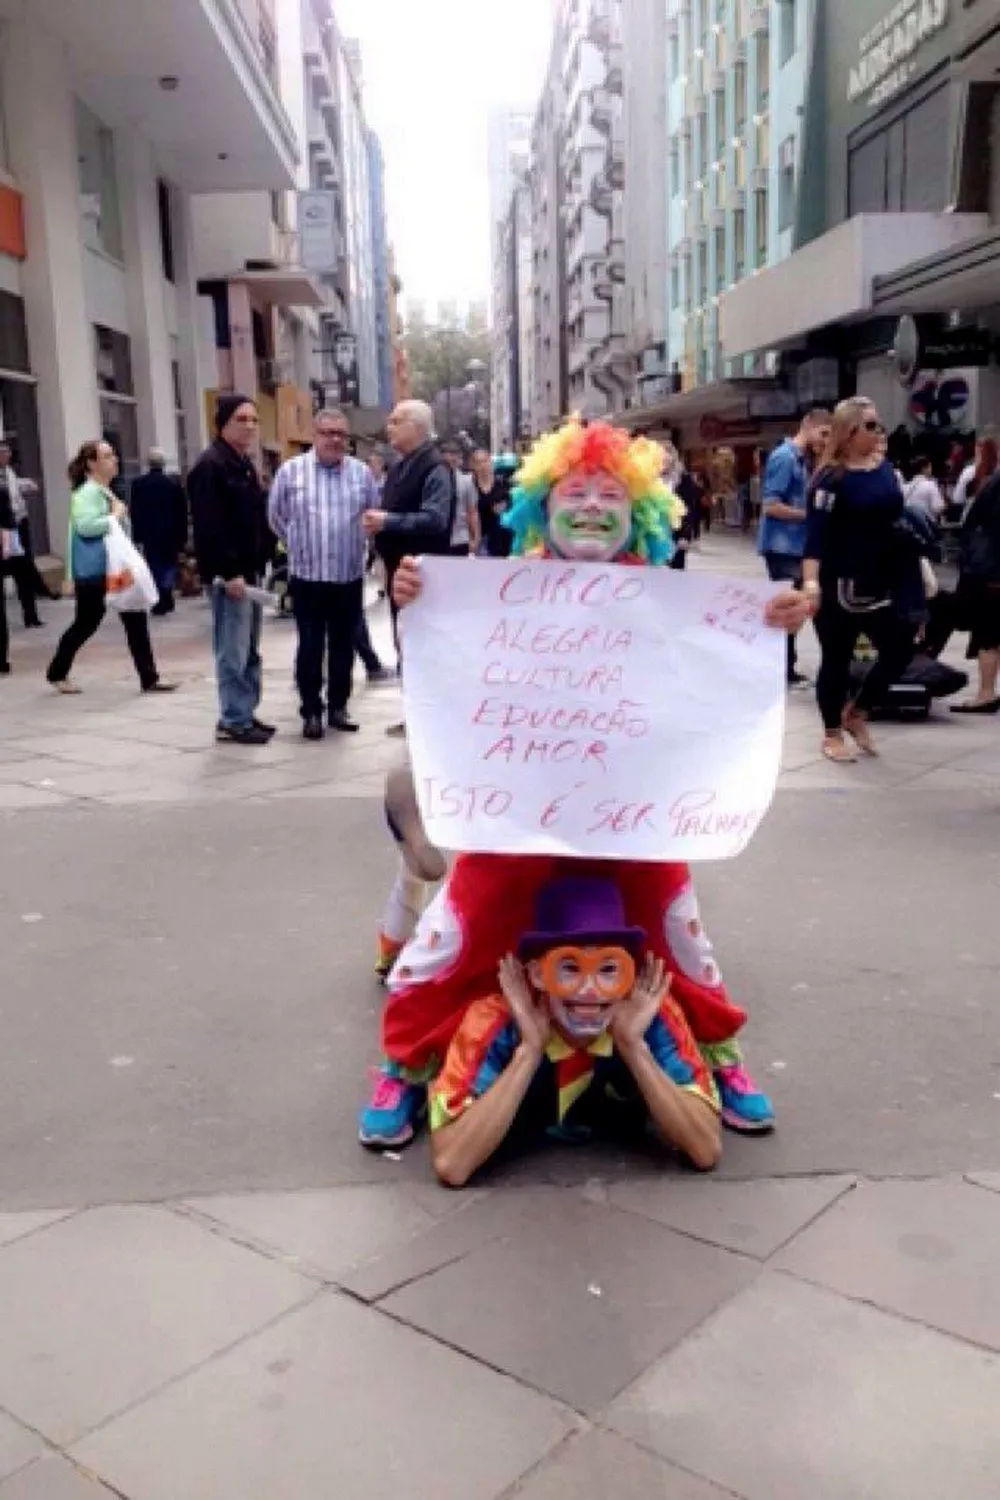  Palhaços do Bem protestam contra brincadeiras macabras para assustar pessoas